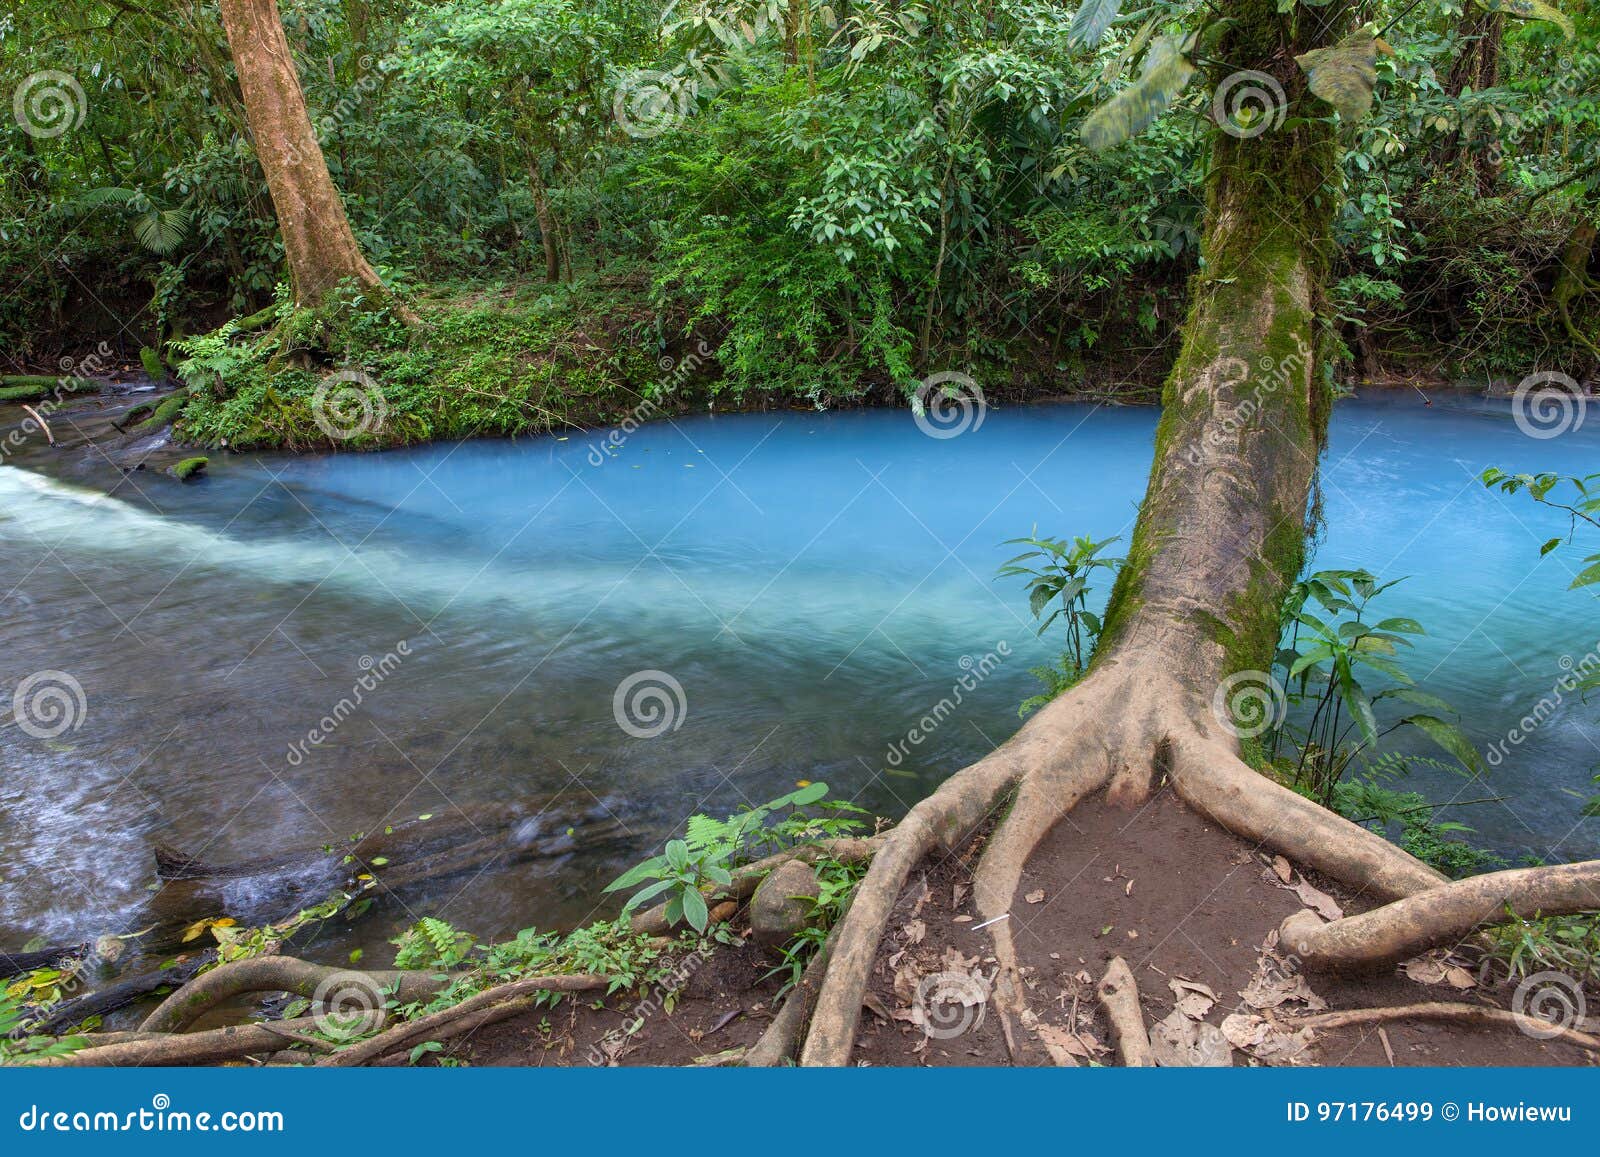 blue hole in rio celeste, costa rica